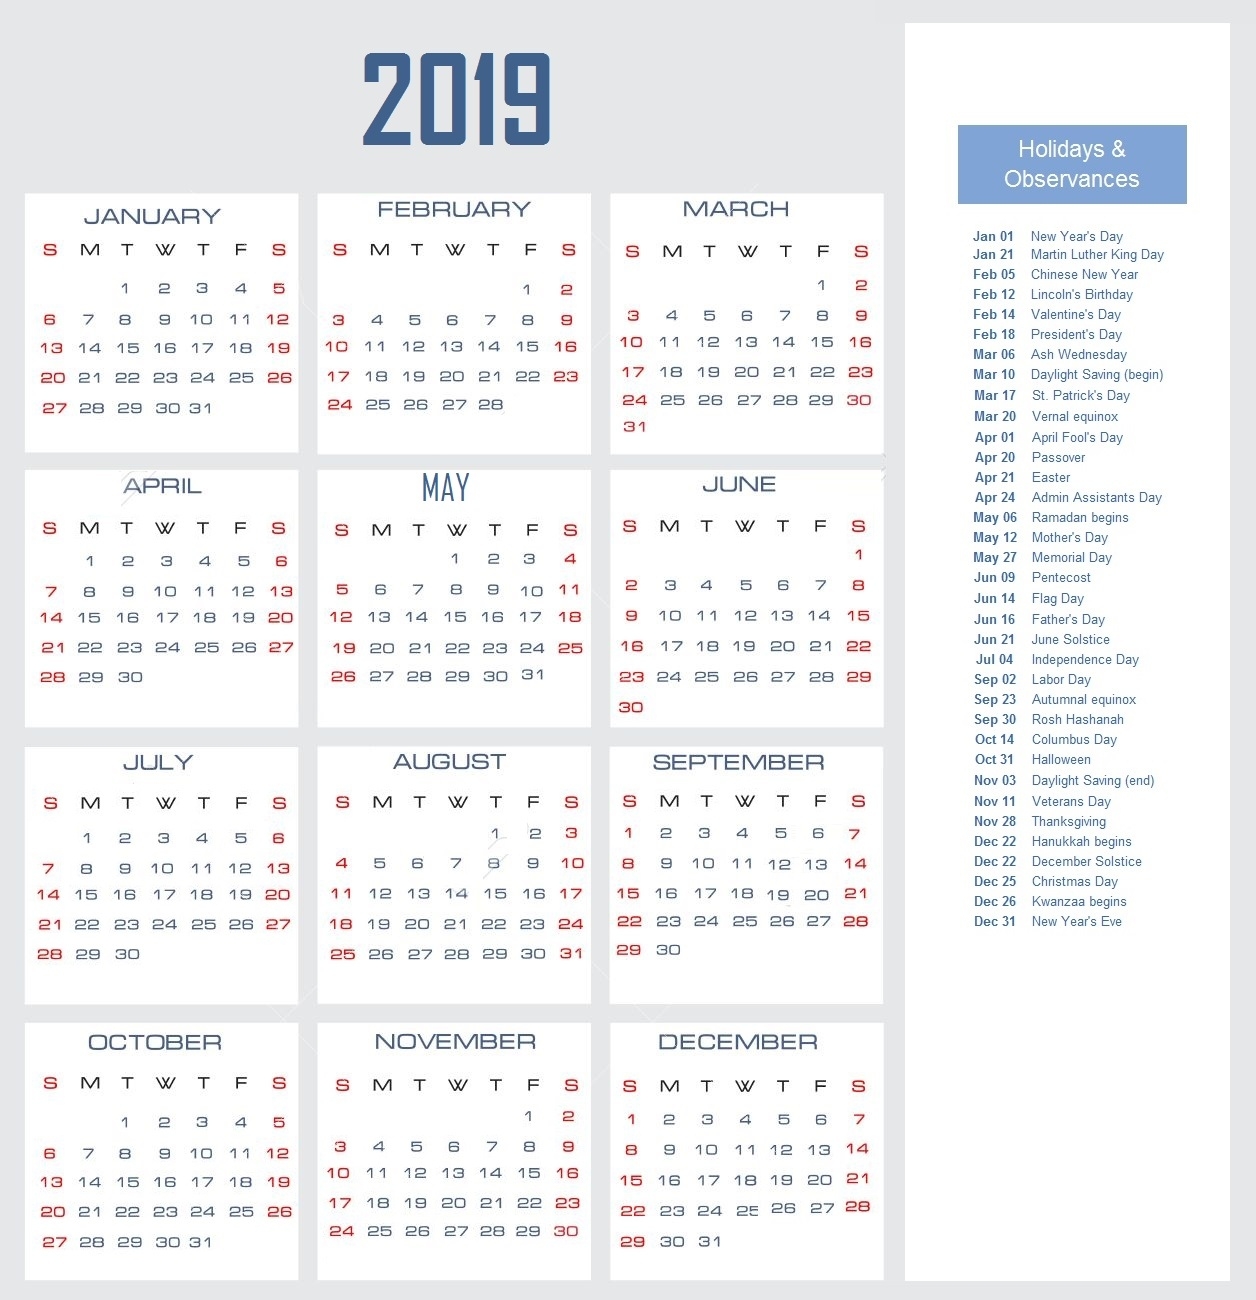 2019 Calendar With Holidays | Calendar 2019 Free Editable Calendar Template 2020 Nova Scotia